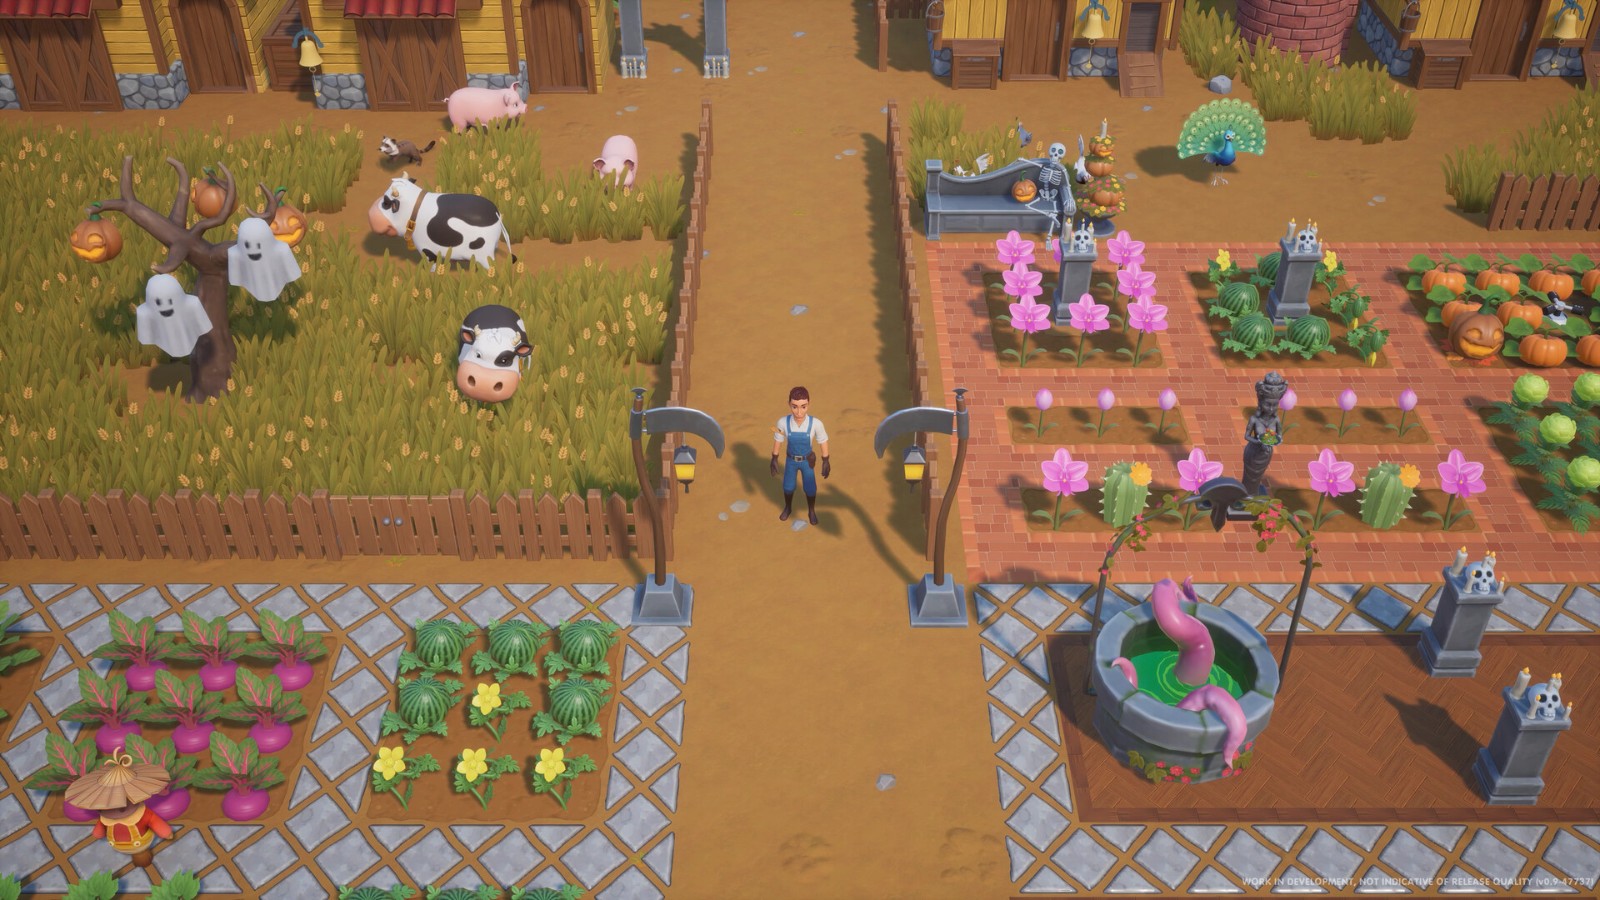 农场休闲模拟游戏《珊瑚岛》10月11日登陆Steam抢先体验